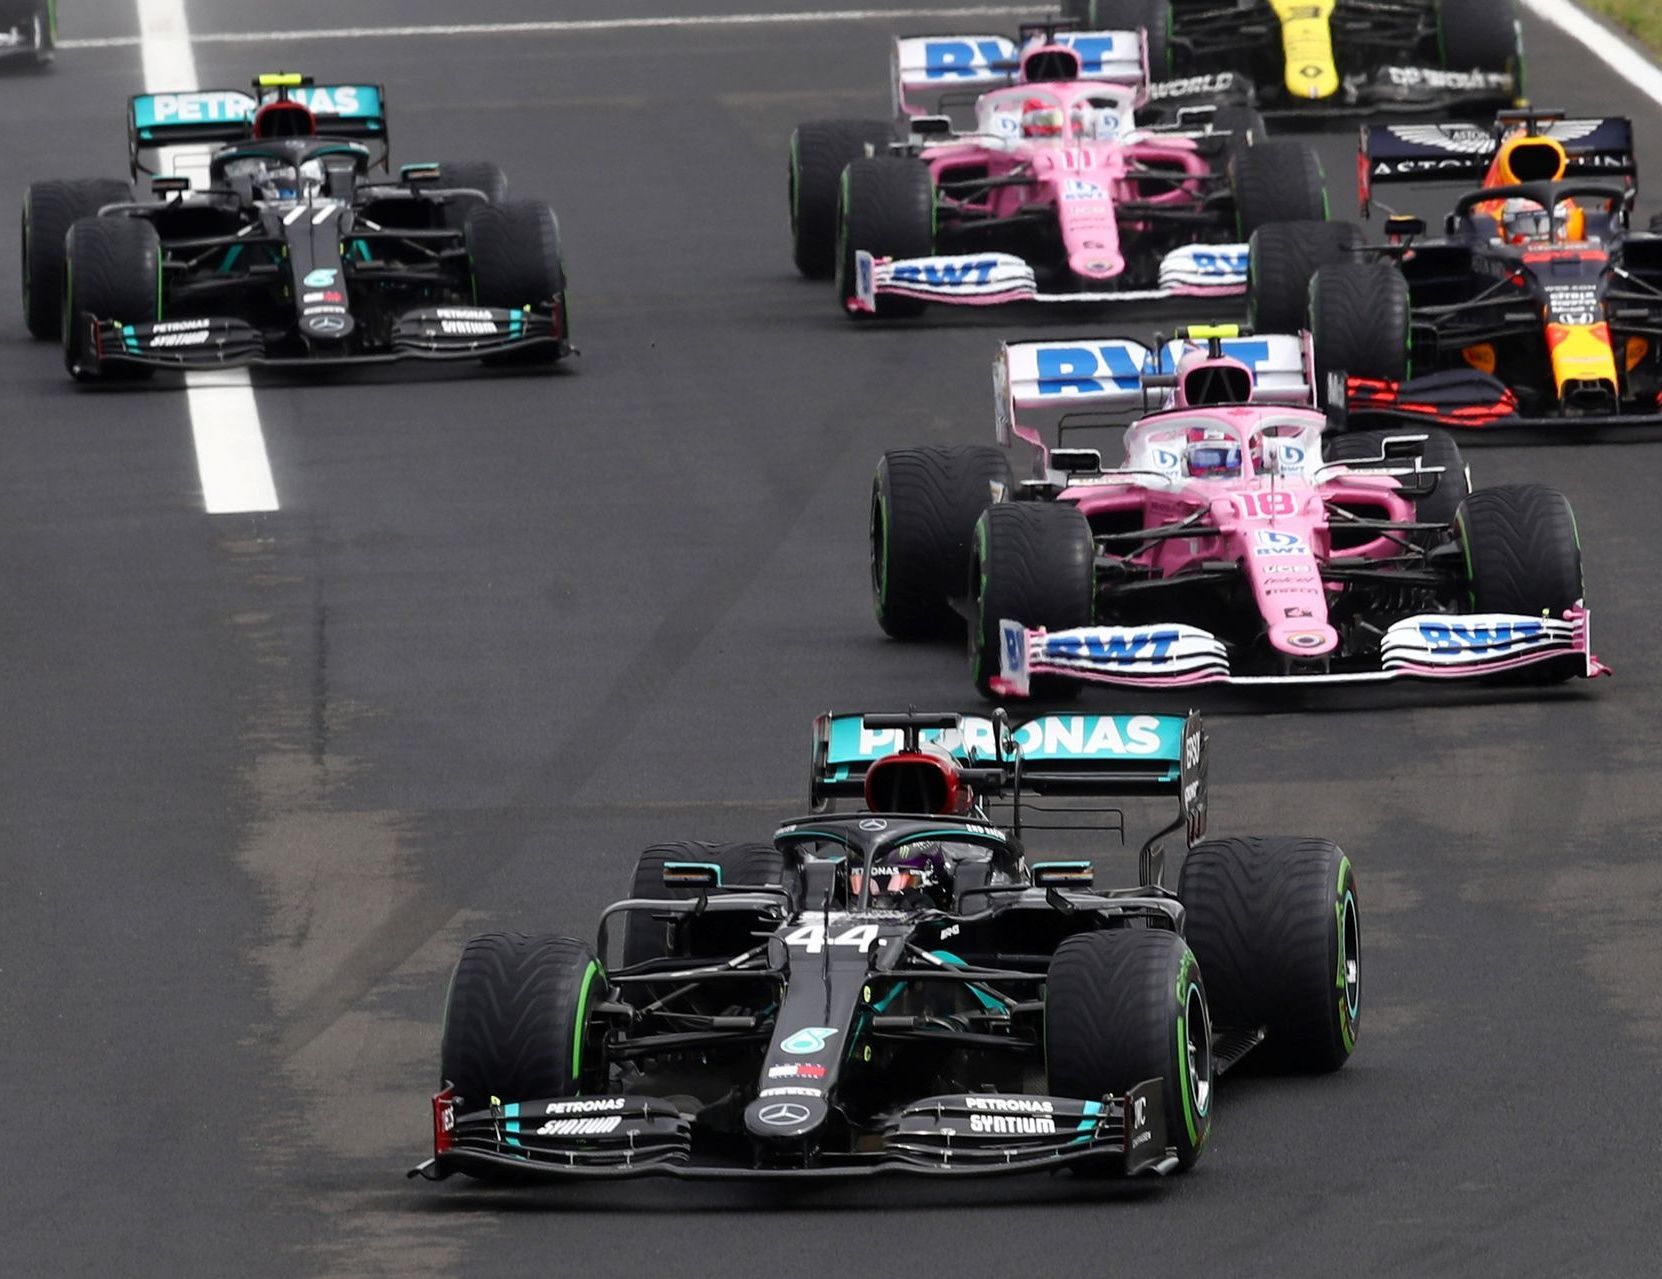 Vozy Mercedes a Racing Point krátce po startu Velké ceny Maďarska 2020